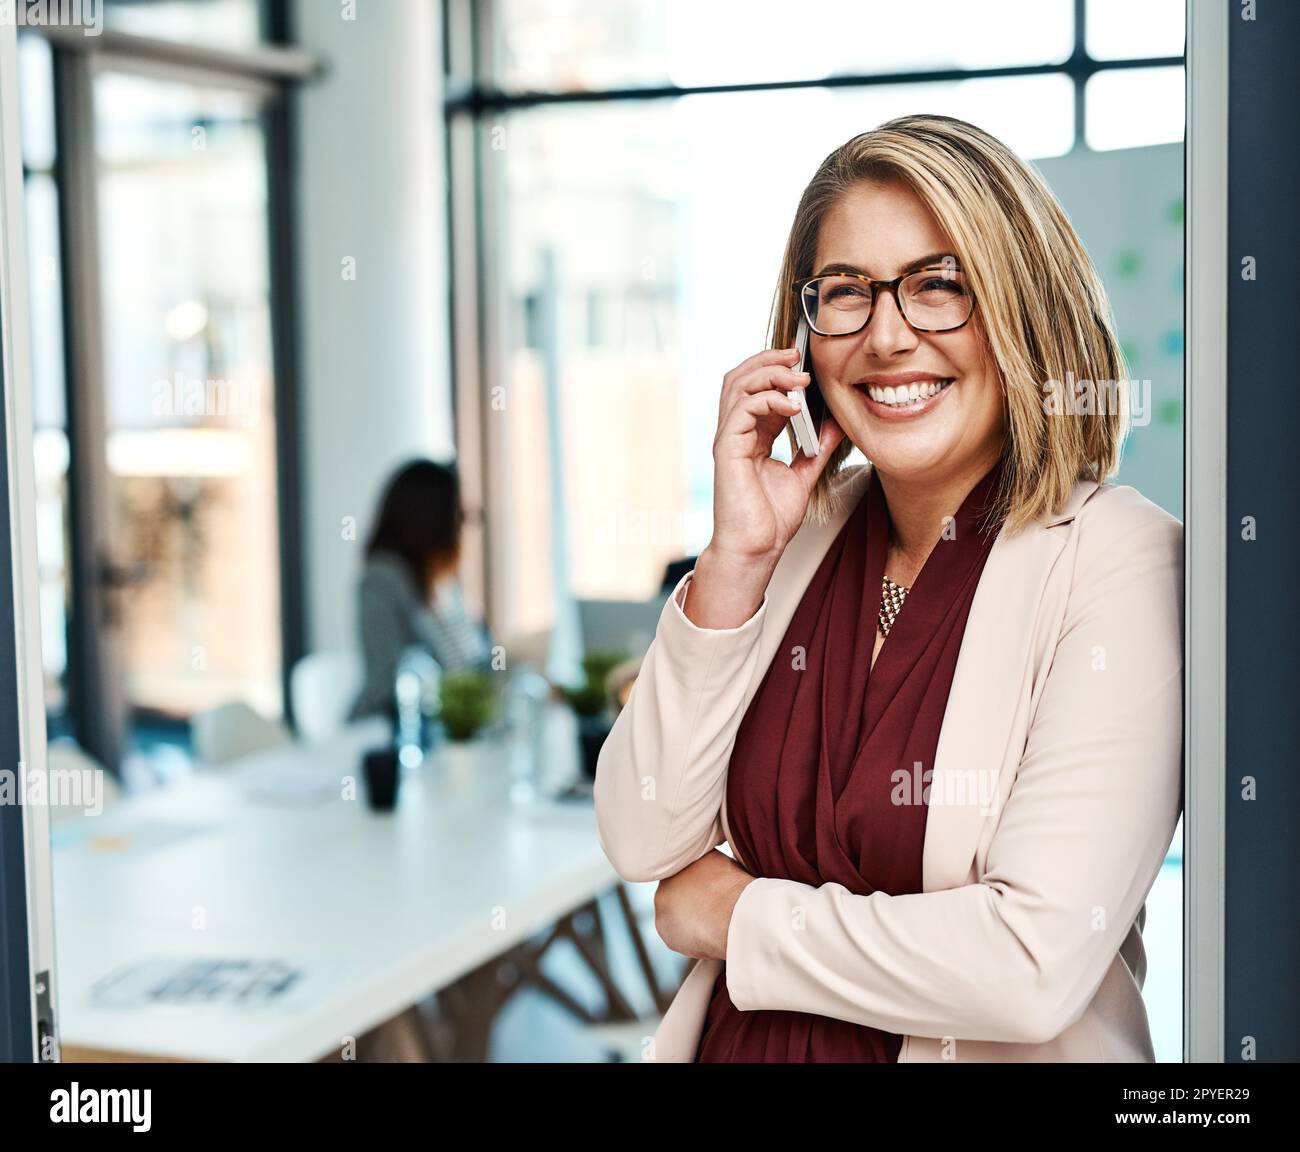 Fornire un servizio eccezionale a tutti i suoi clienti. una donna d'affari che parla su un cellulare in un ufficio. Foto Stock